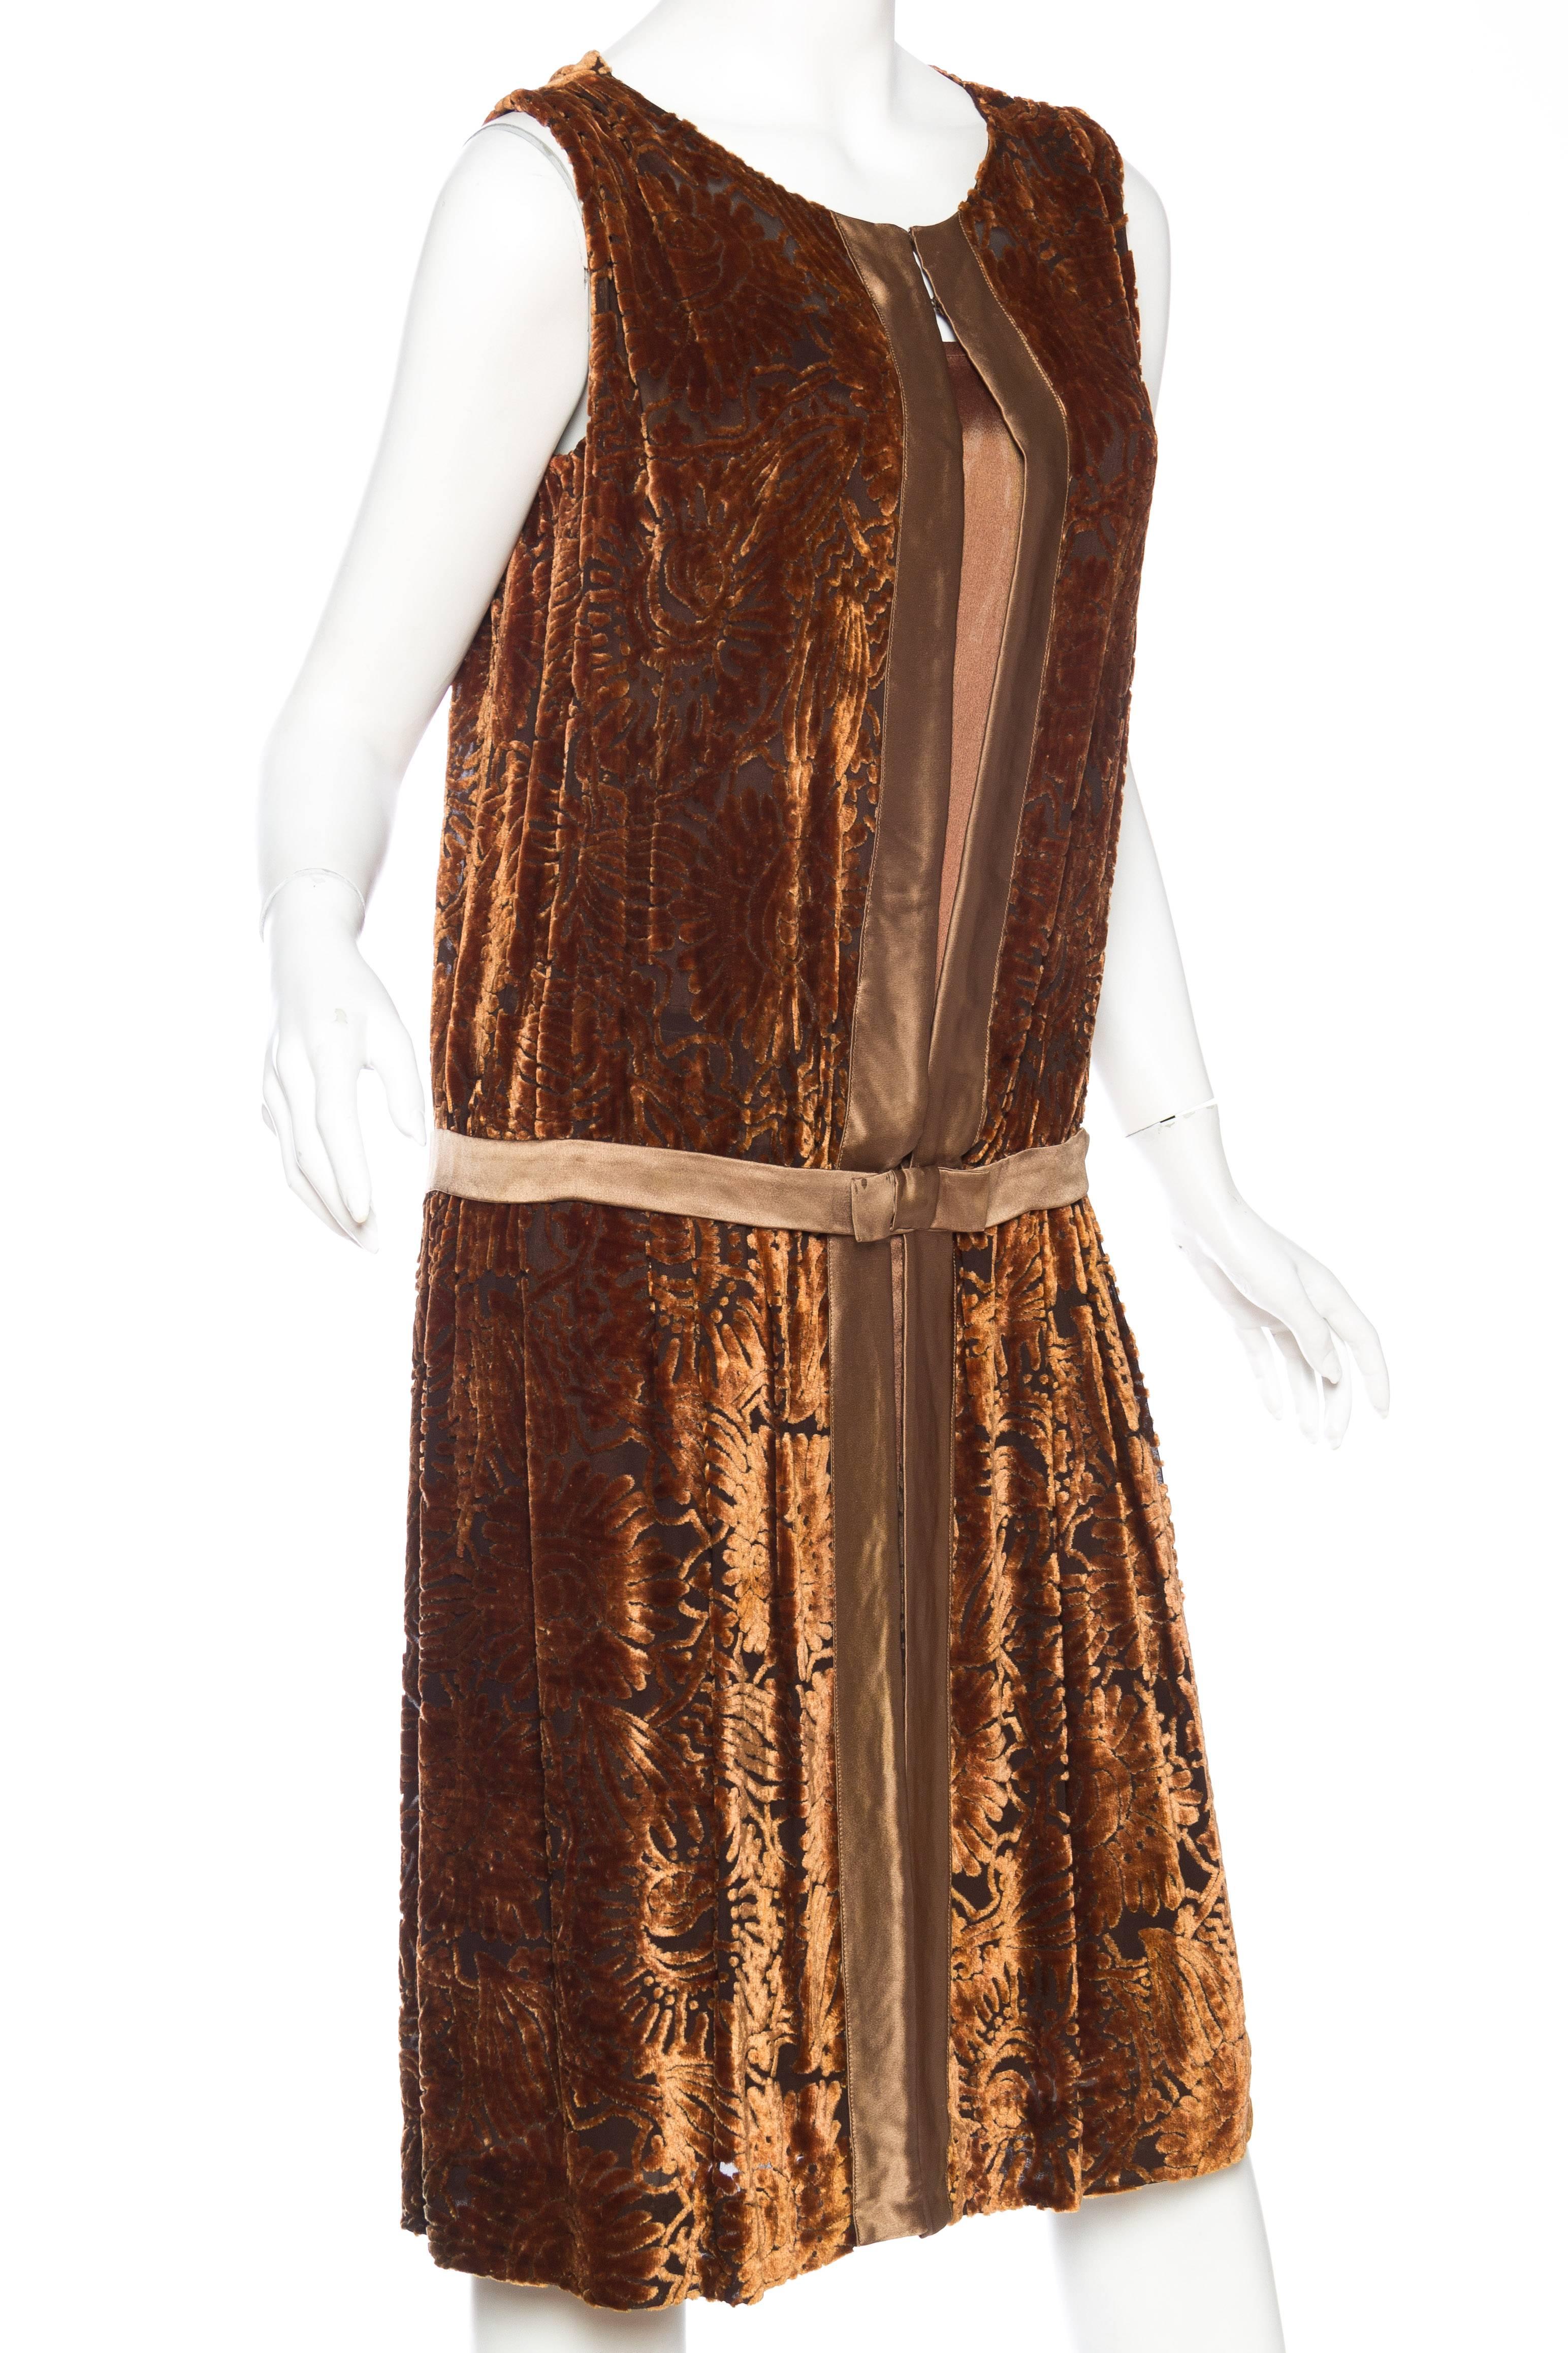 1920 velvet dress